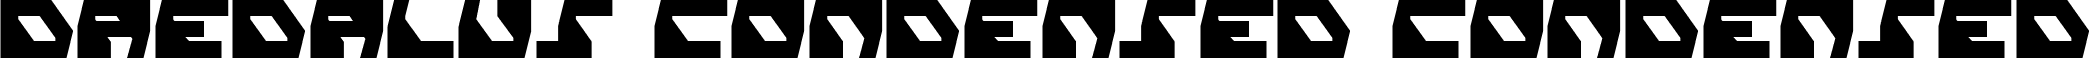 Daedalus Condensed Condensed font - daedalusc.ttf